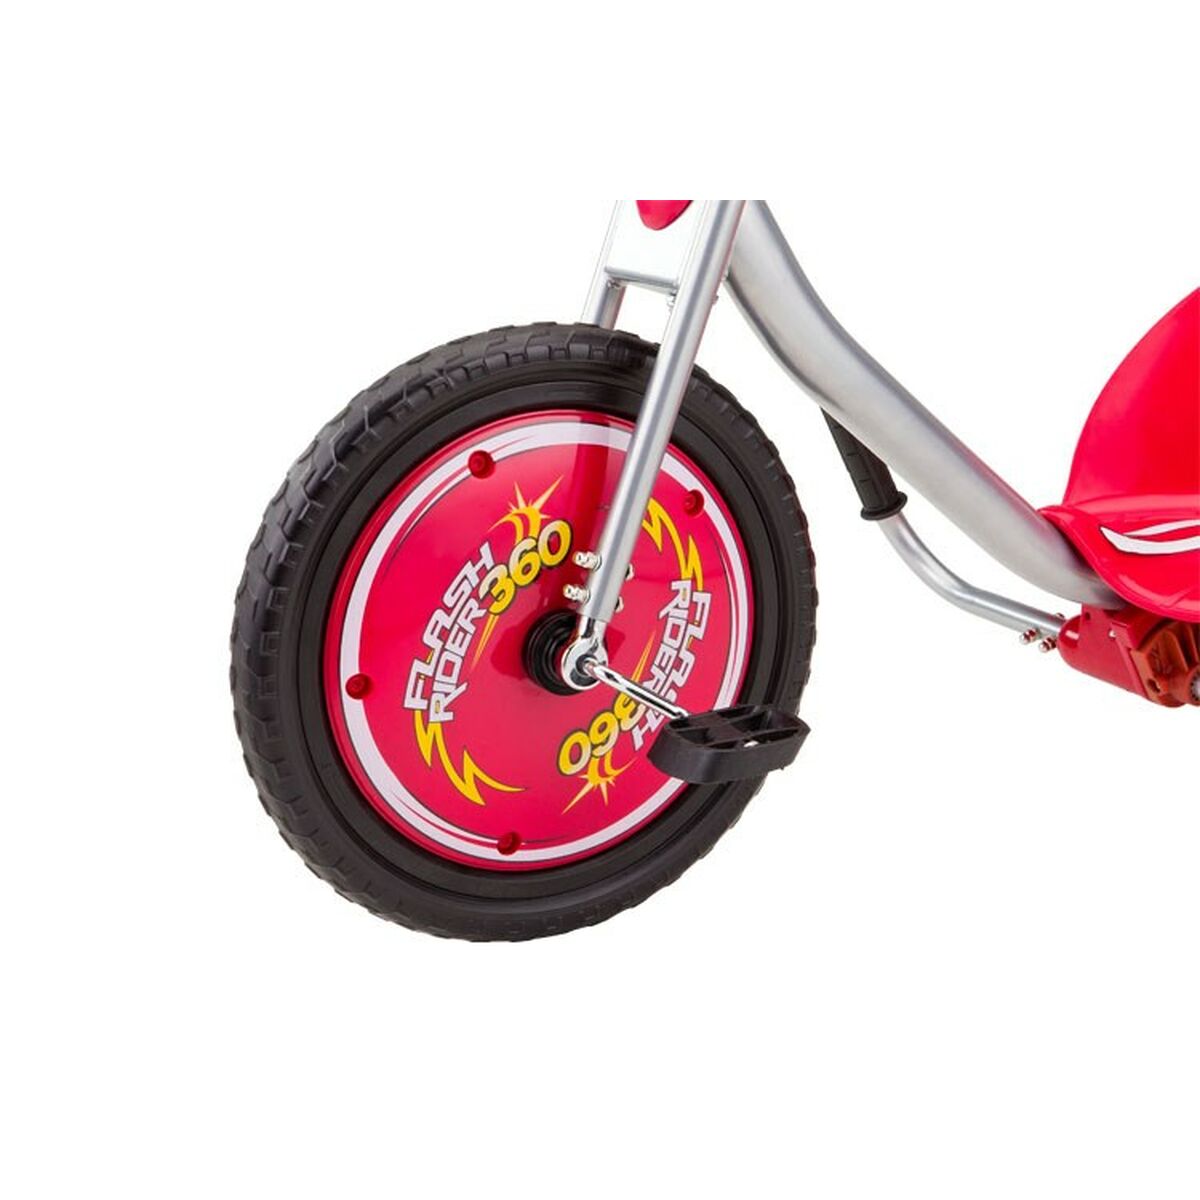 Bērnu velosipēds Razor 20036599 Melns Rozā 96,5 x 61 x 61 cm